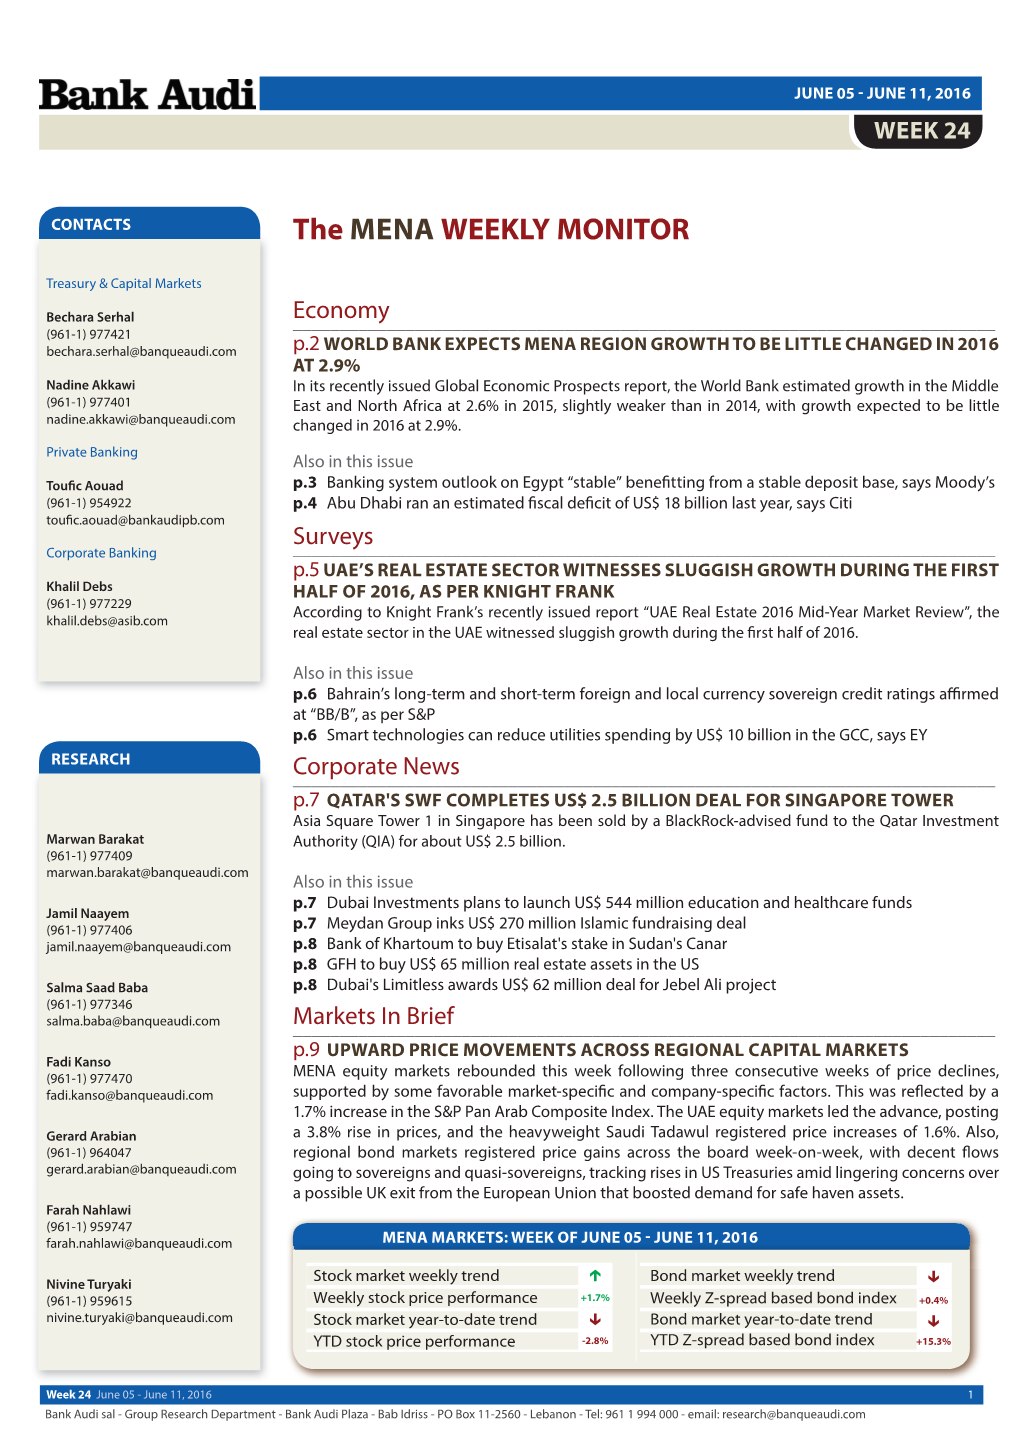 MENA Weekly Monitor (24)